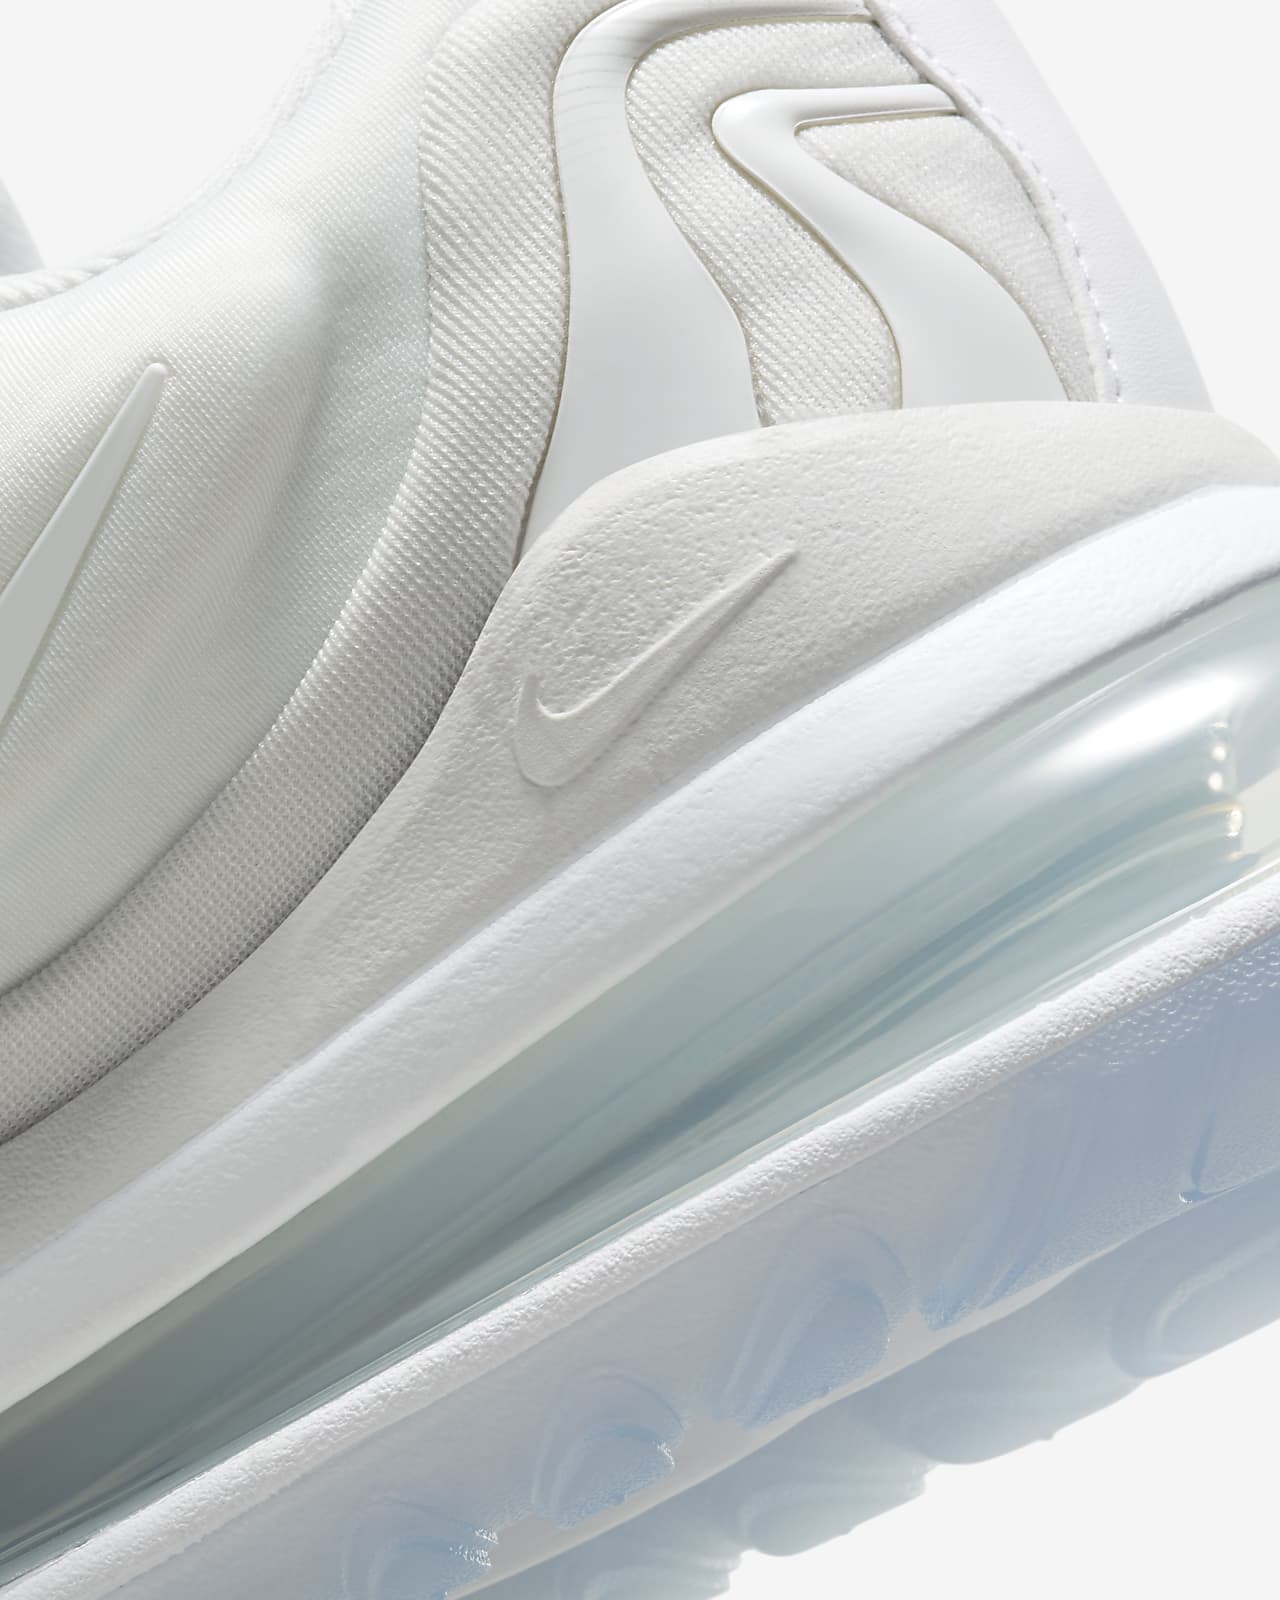 Nike Air Max 270 React ENG Photon Dust/White-Platinum Tint